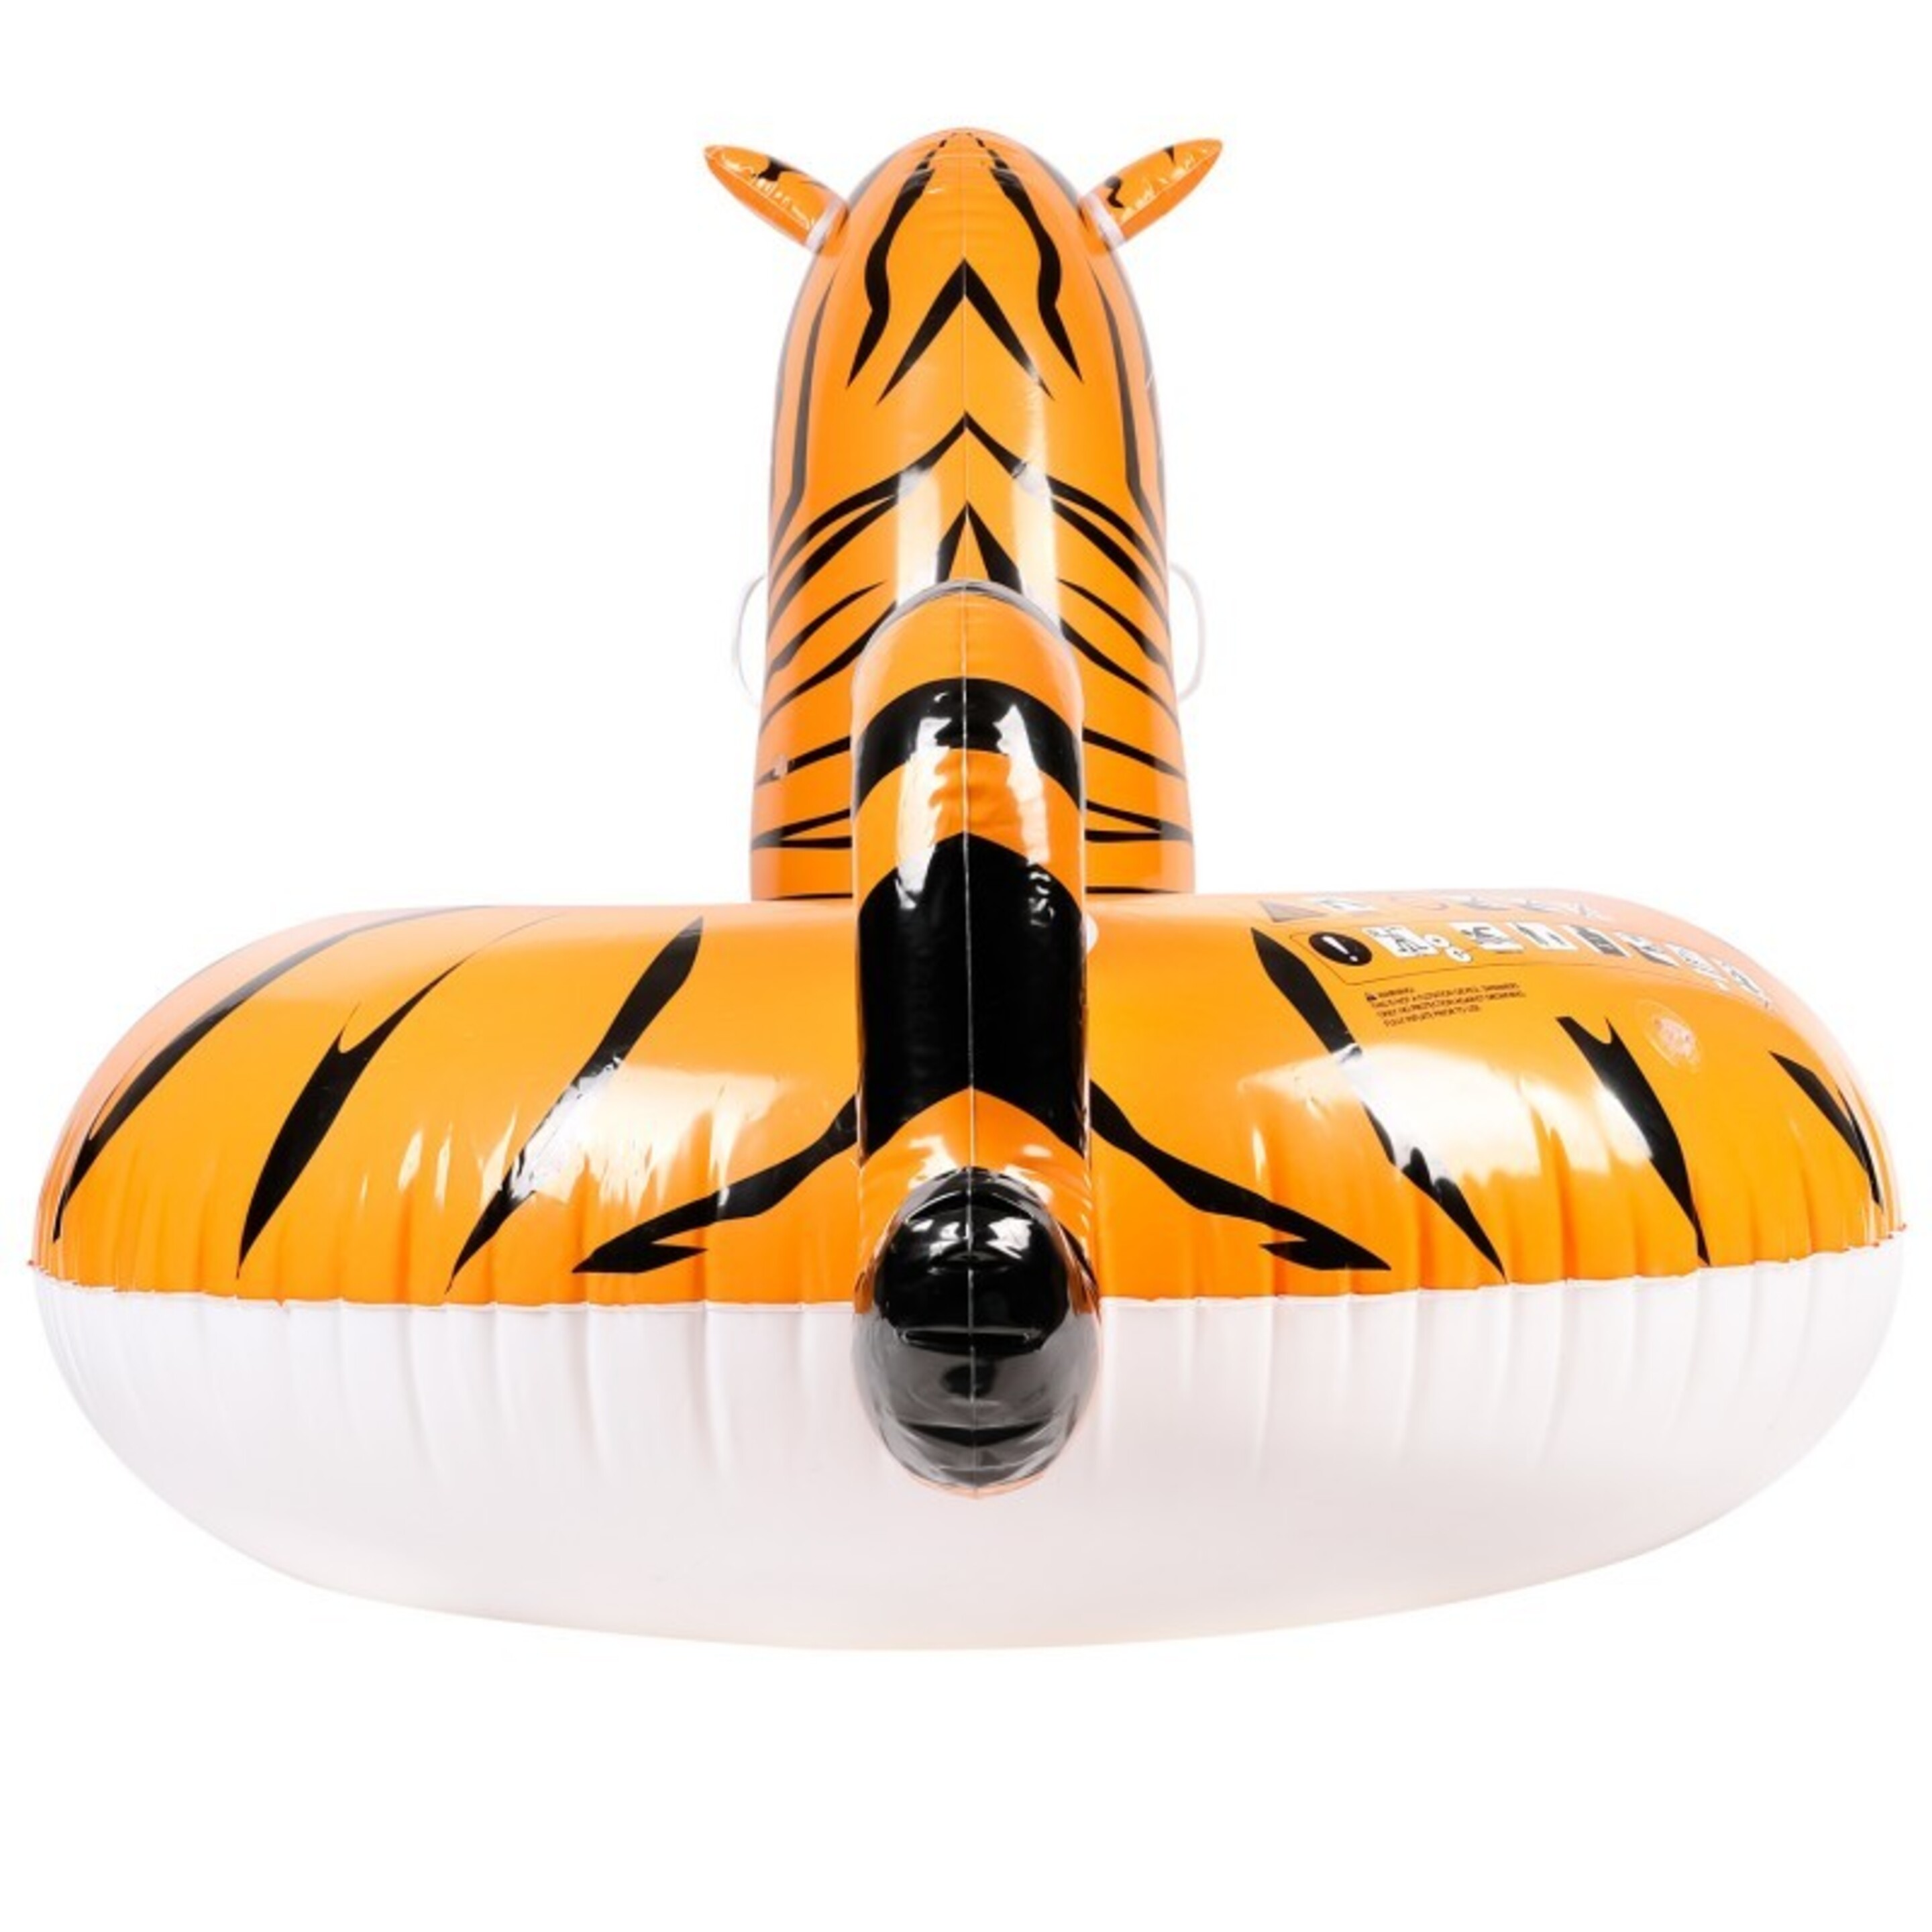 Flotador Montable Xxl Para Piscina Y Playa - Tiger - 150x105x100cm